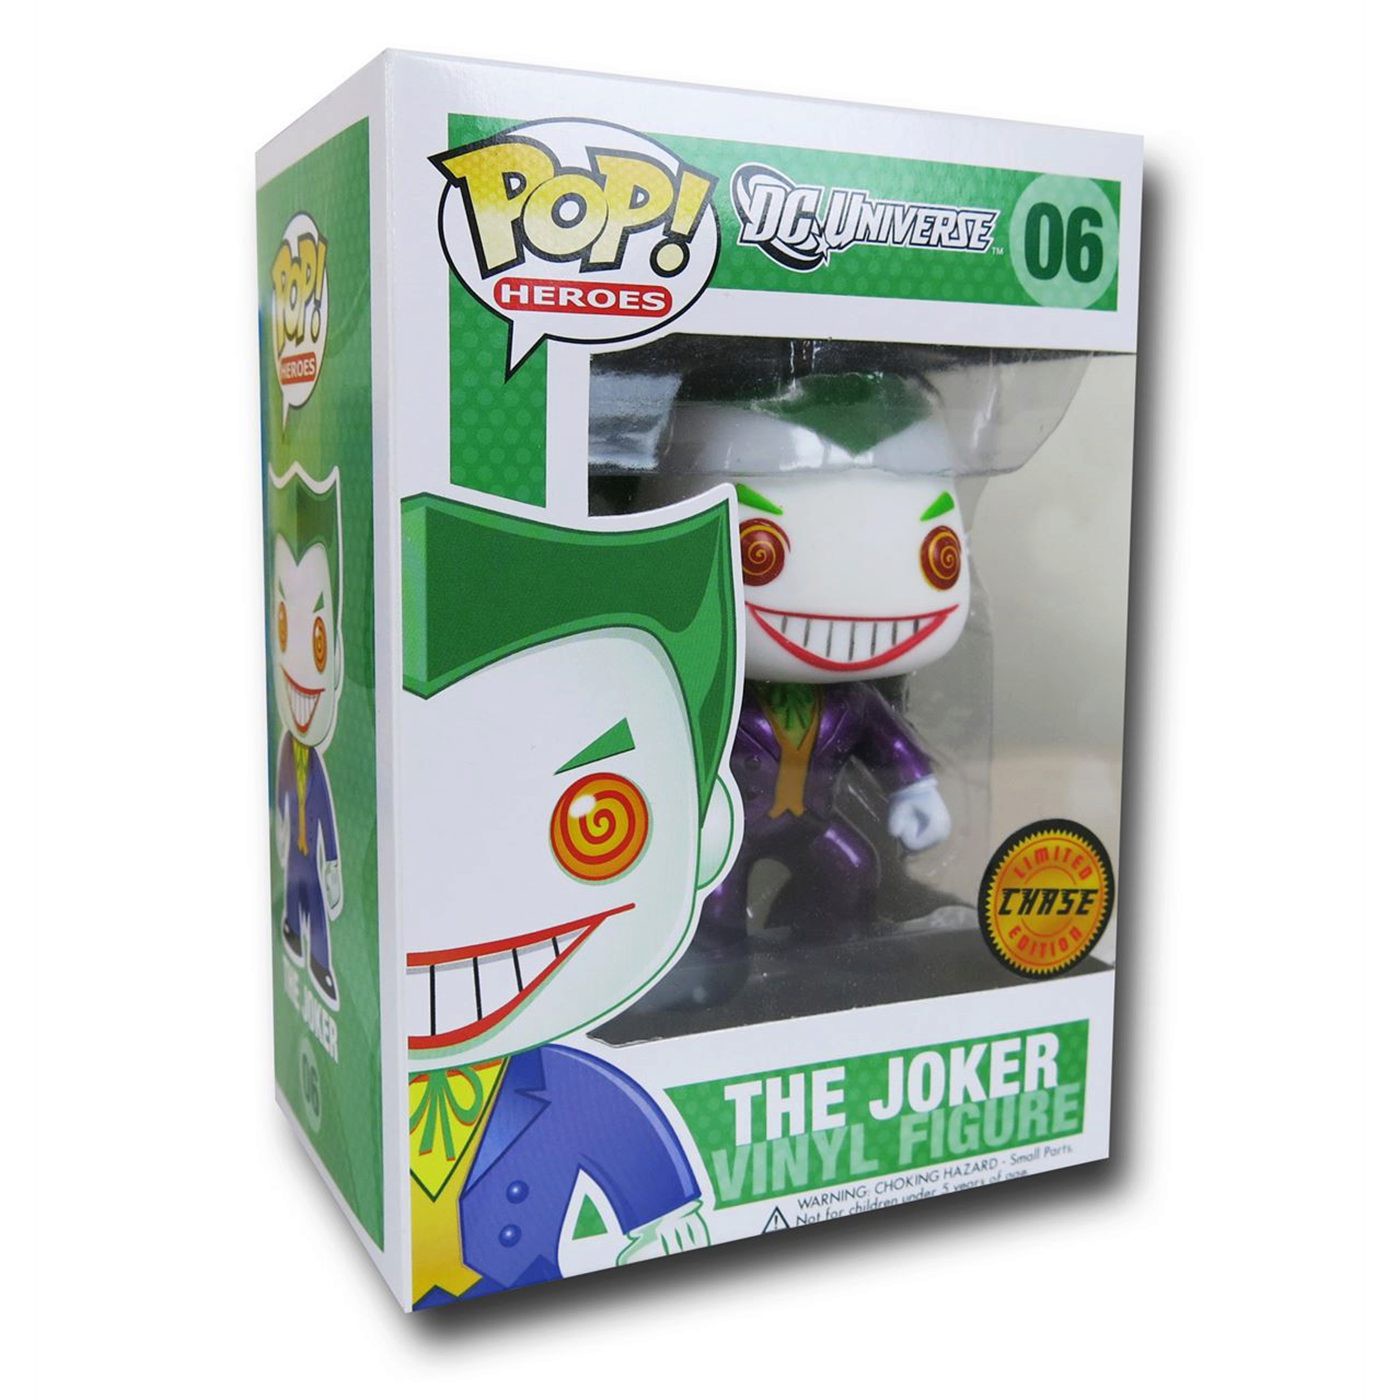 Joker Chase Variant Funko Pop Vinyl Figure